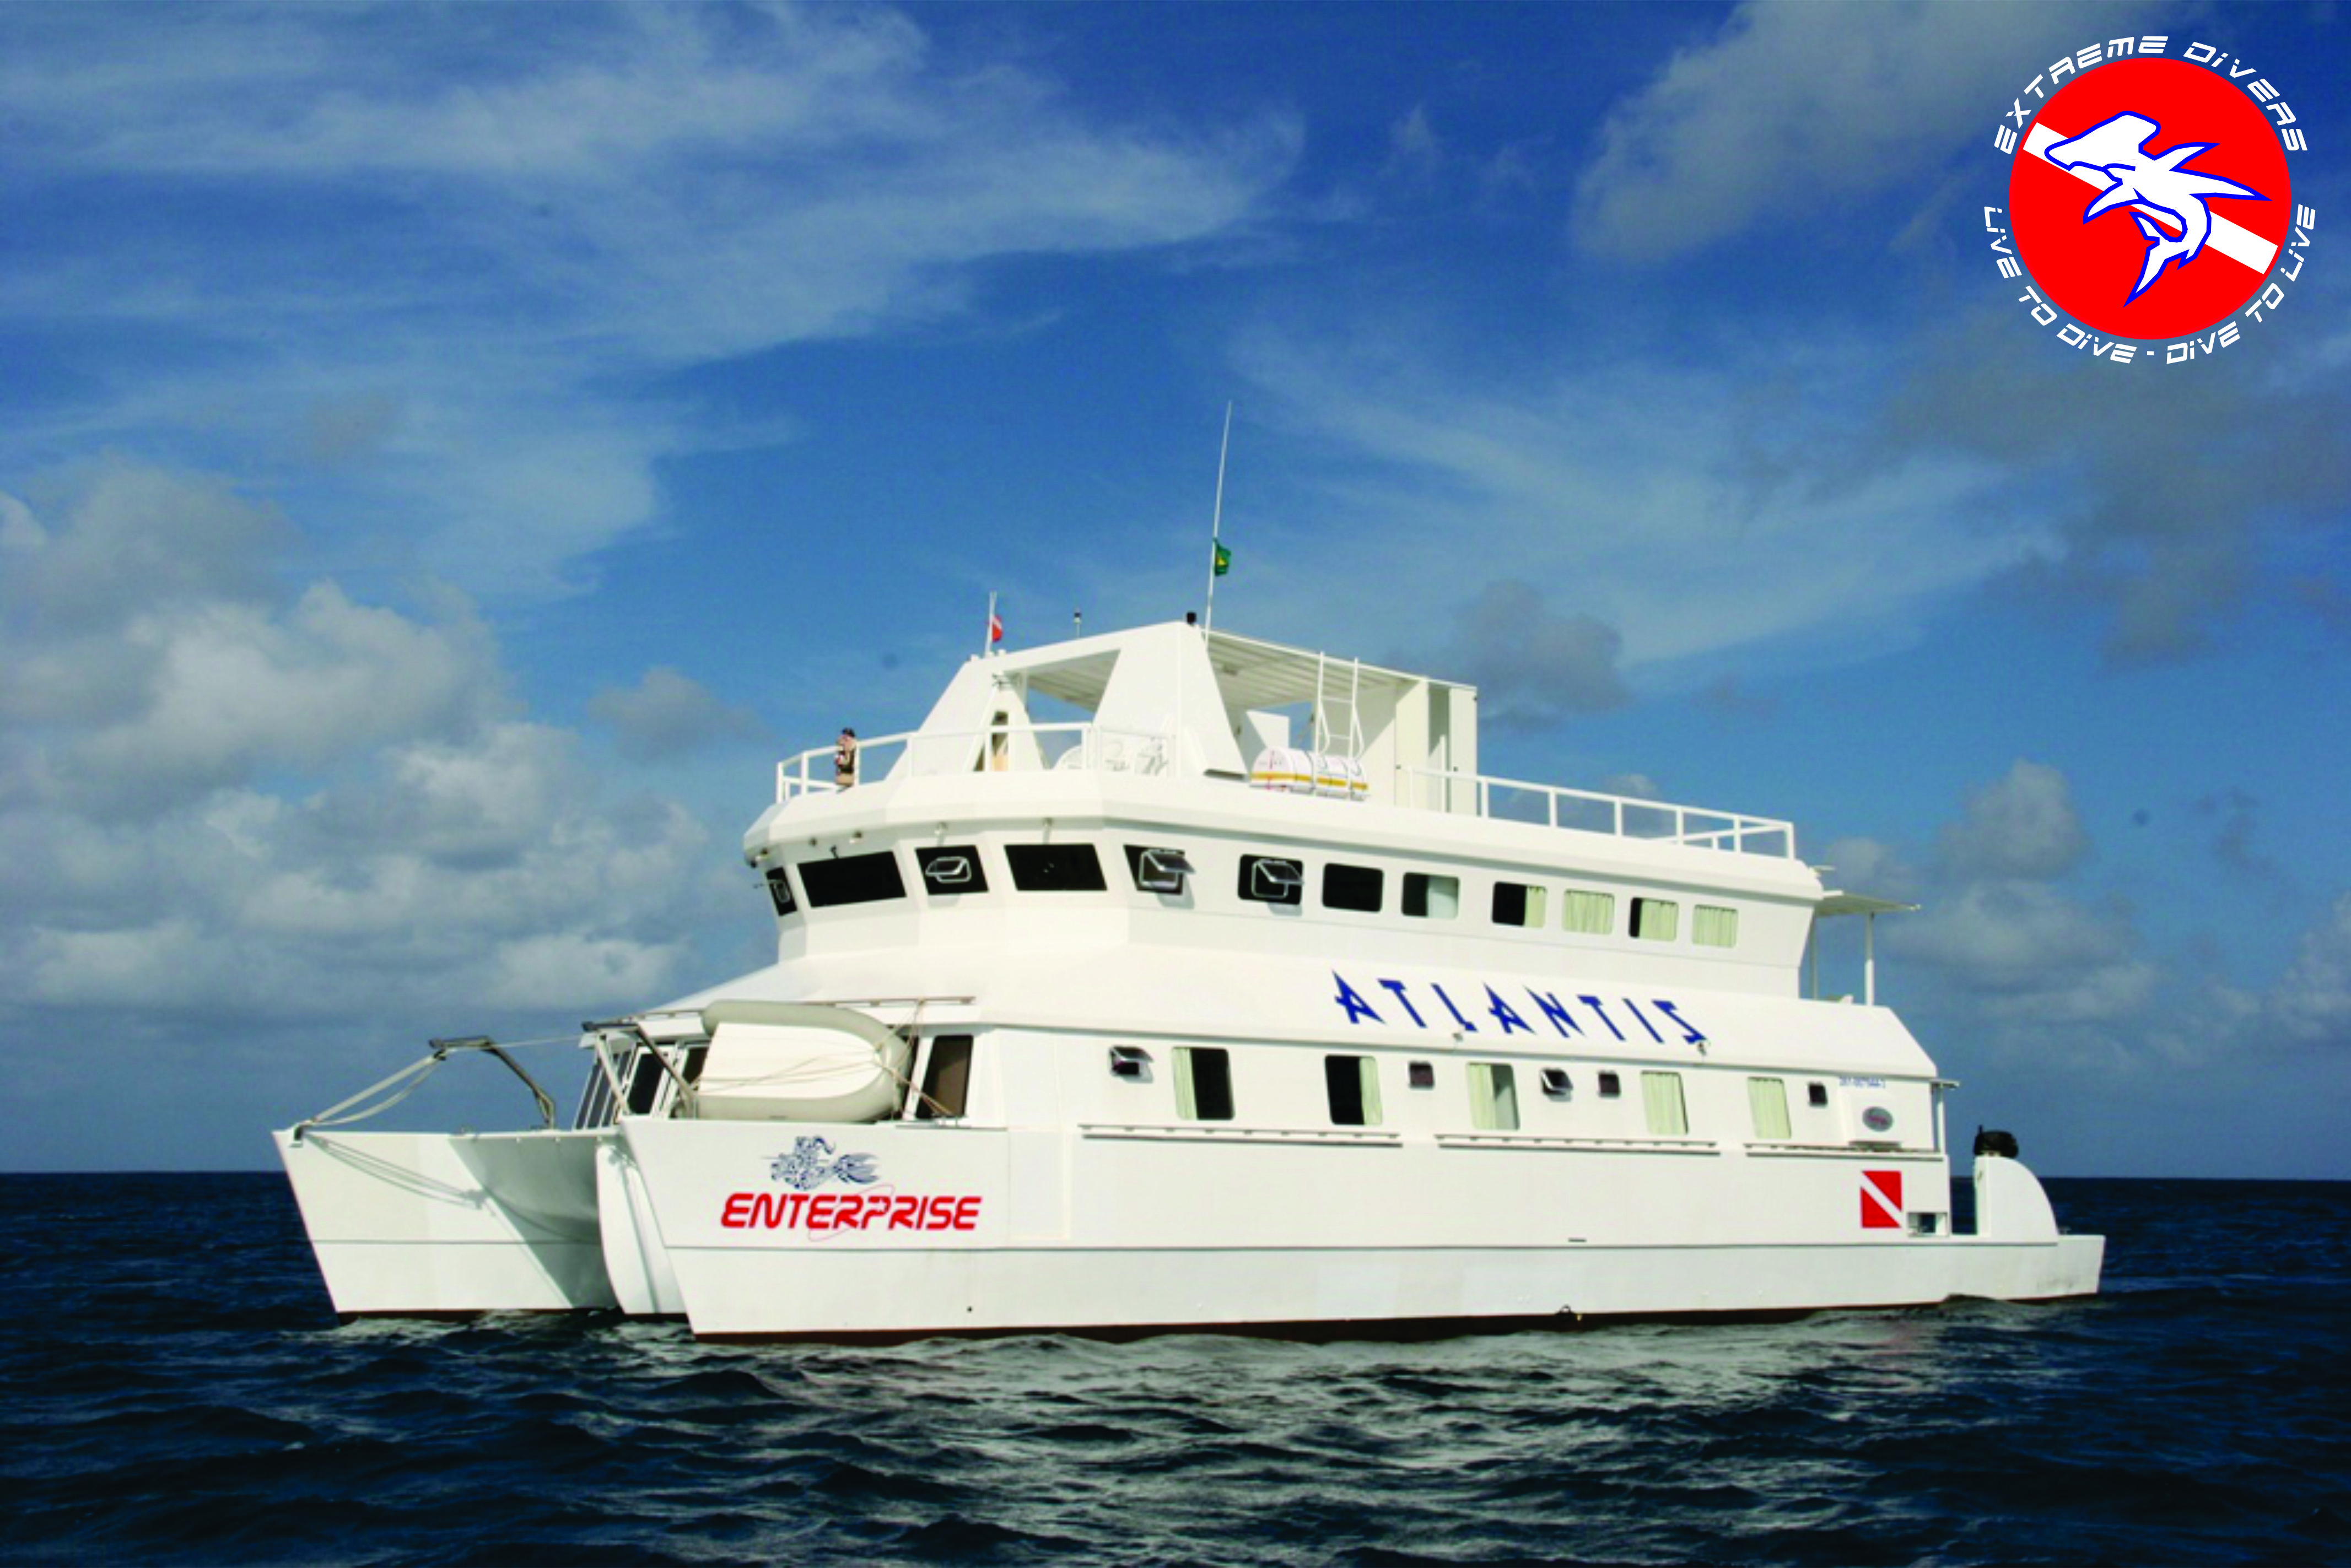 Live Aboard Enterprise XXIII – Reserva Exclusiva parcelado em até 8x – 17 e 18 de Janeiro de 2015  – Até 8 Mergulhos!!!